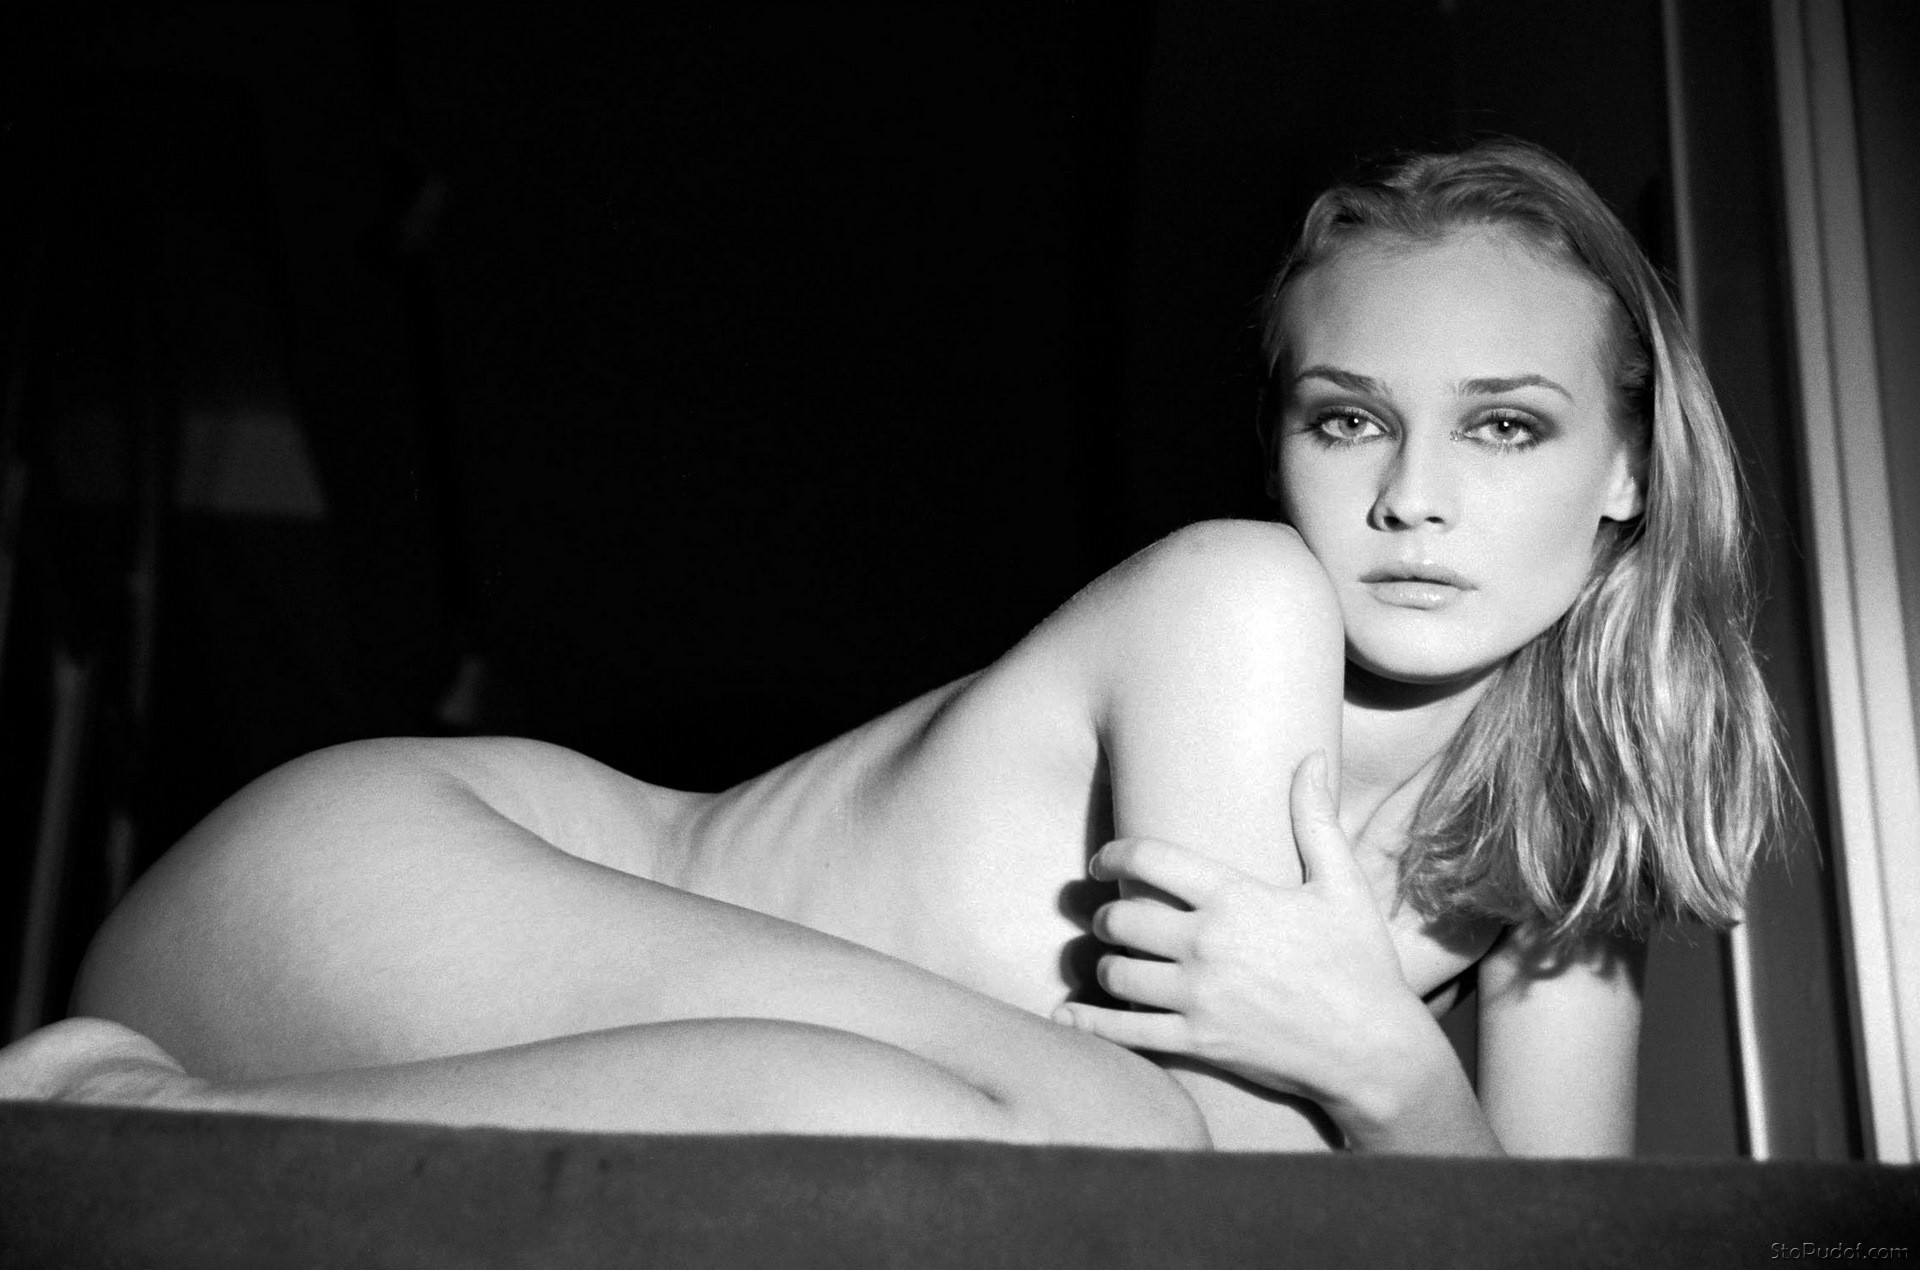 Naked diane photos kruger Diane Kruger